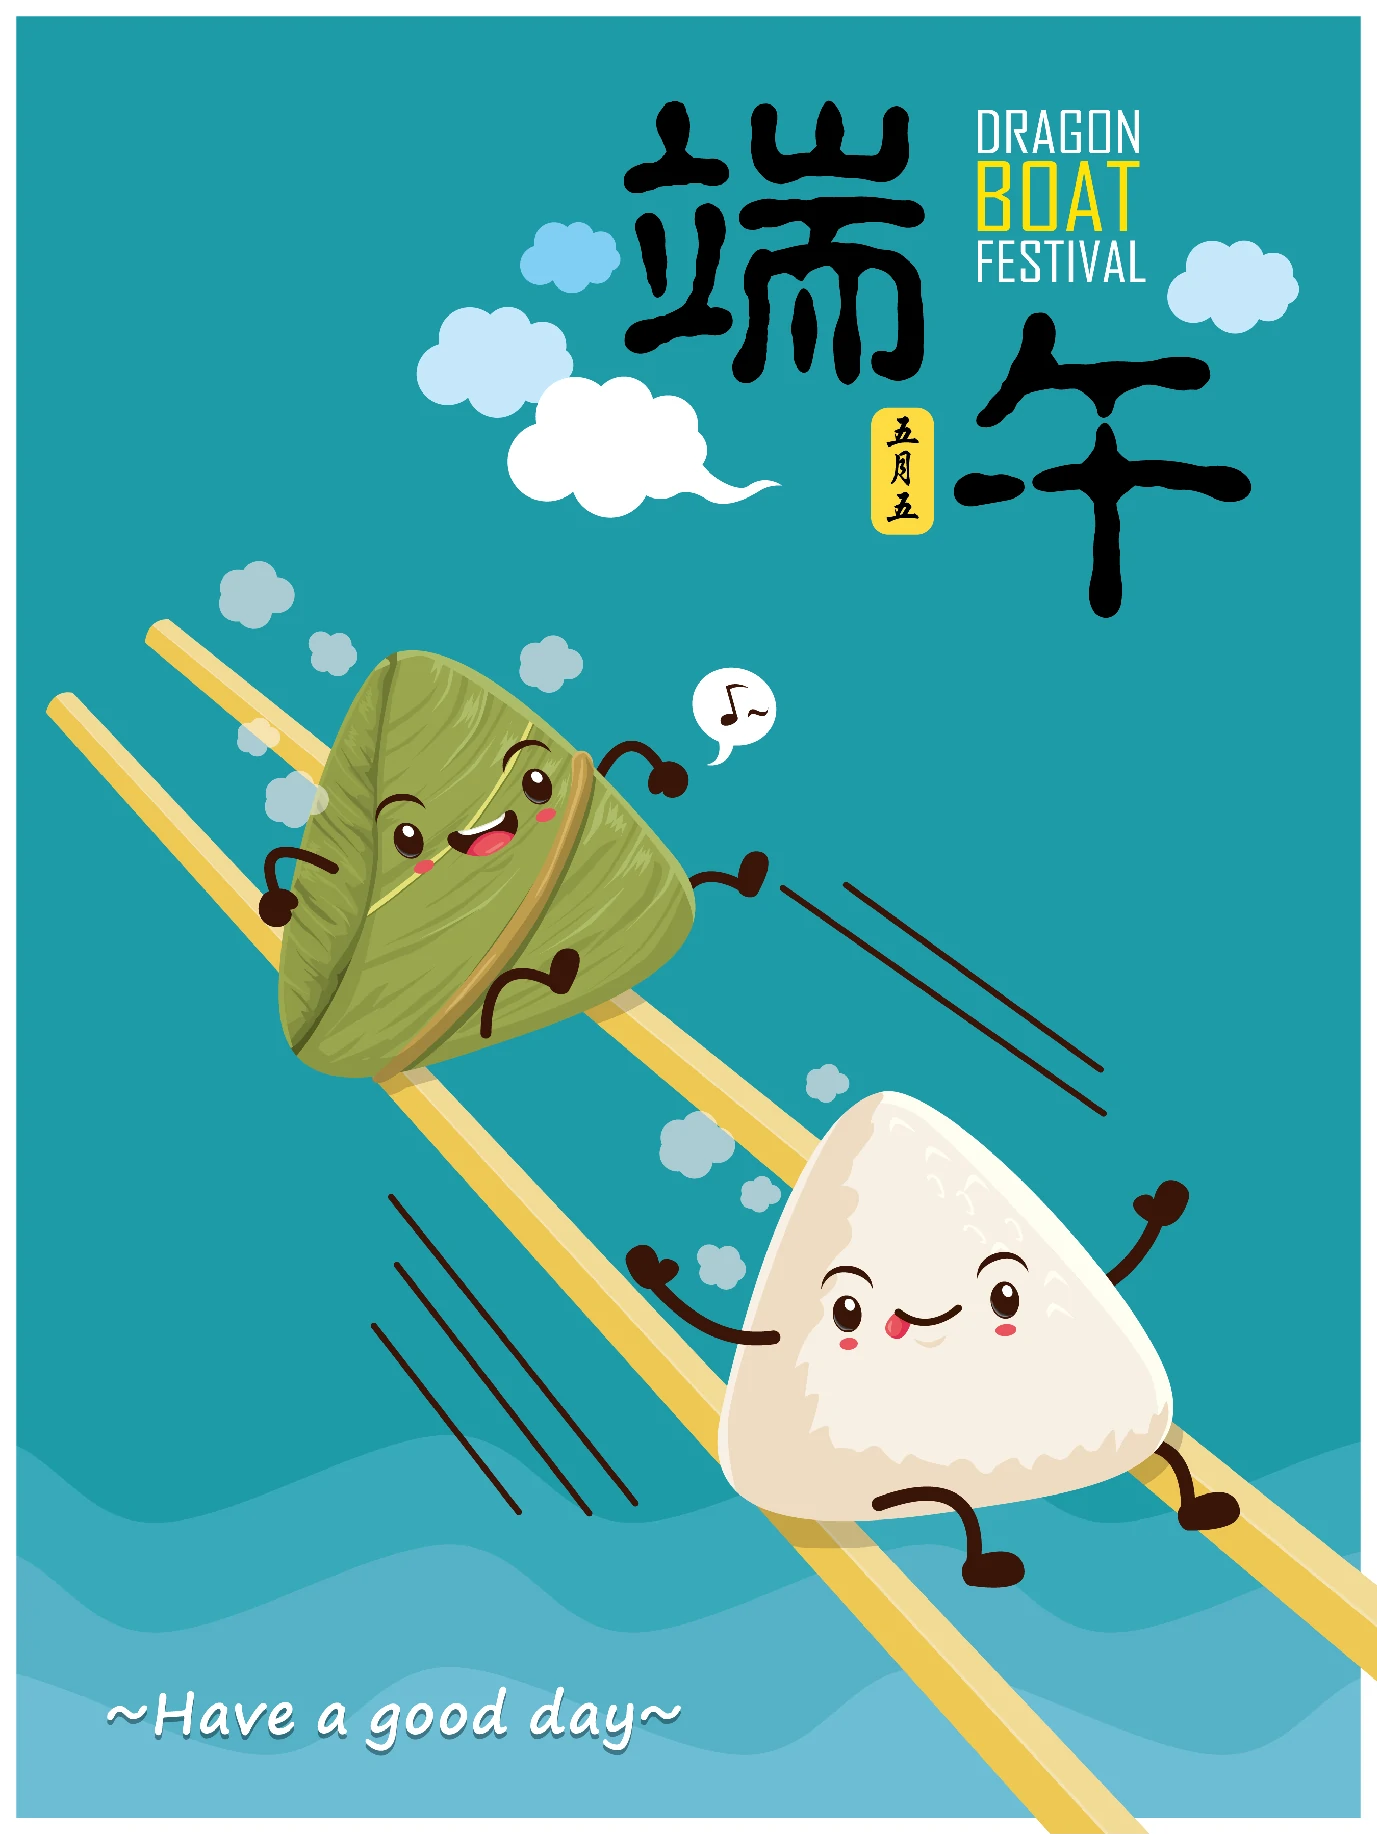 中国传统节日卡通手绘端午节赛龙舟粽子插画海报AI矢量设计素材【045】